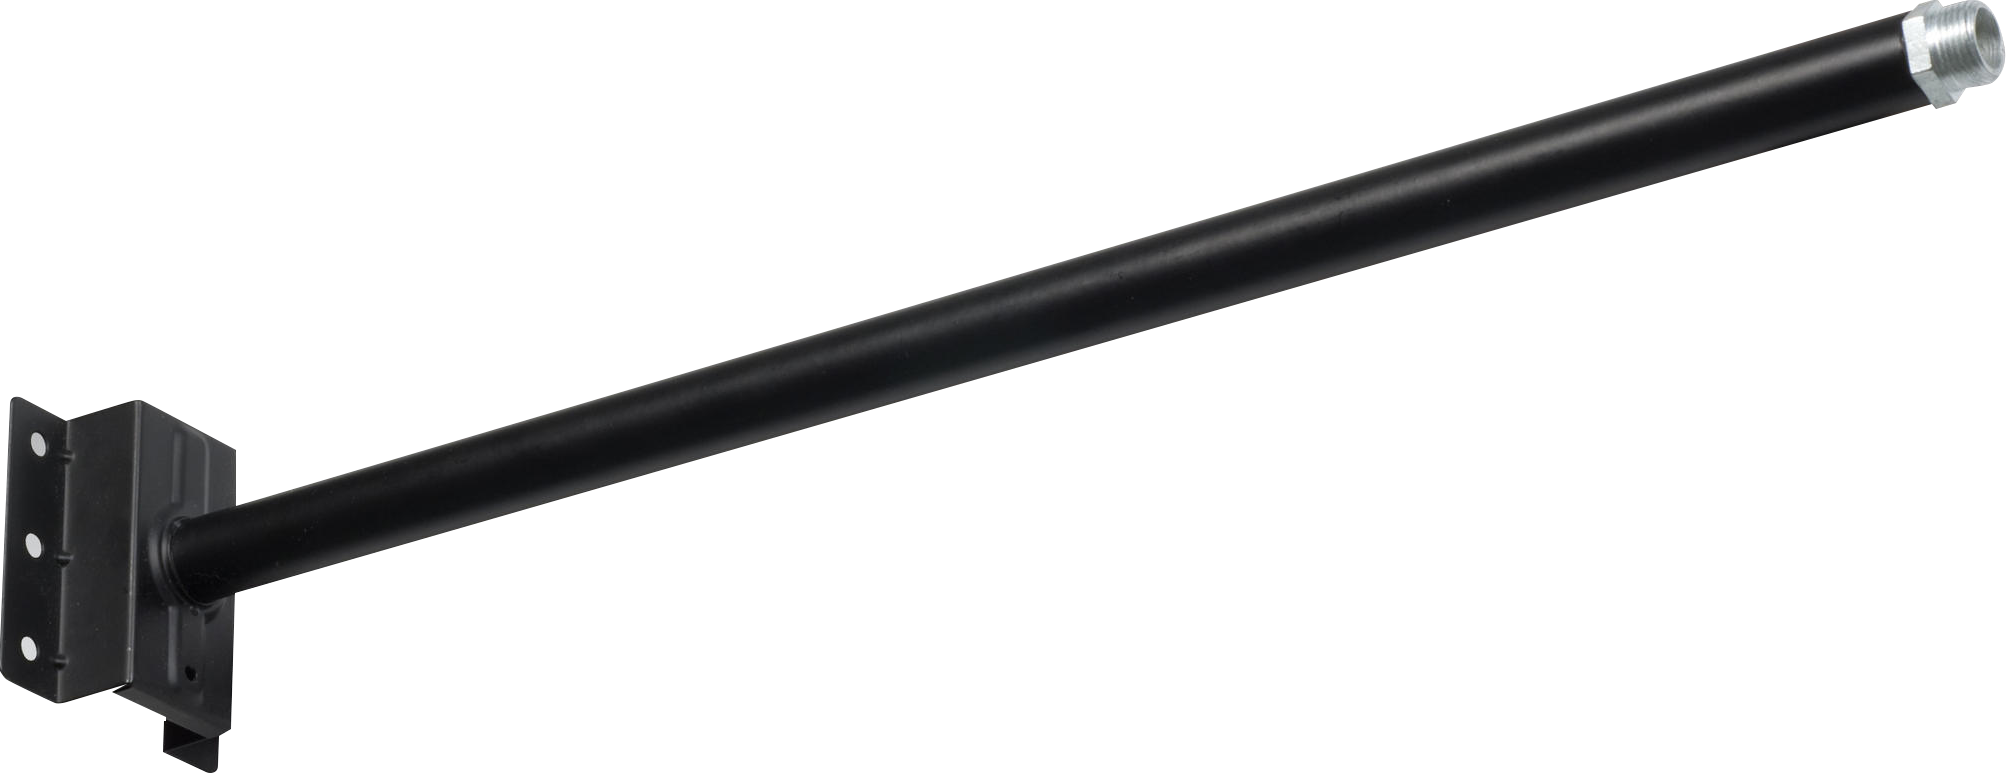 Aluminium Die-Cast Extension Arm (Black) M20 Fitting - EXT1 